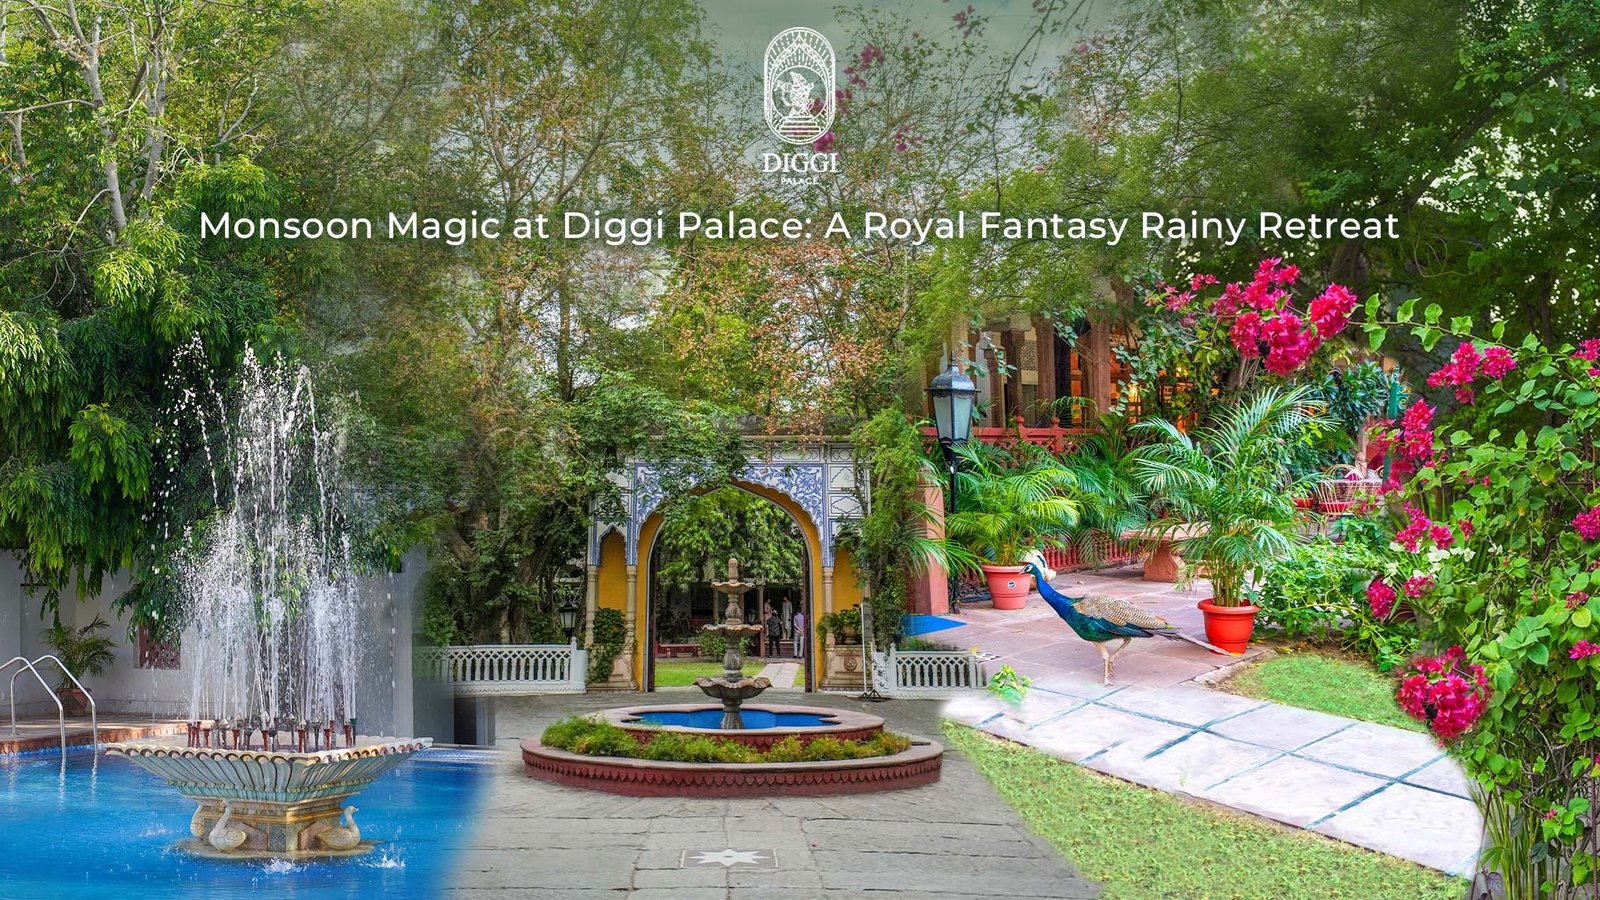 Monsoon Magic at Diggi Palace: A Royal Fantasy Rainy Retreat